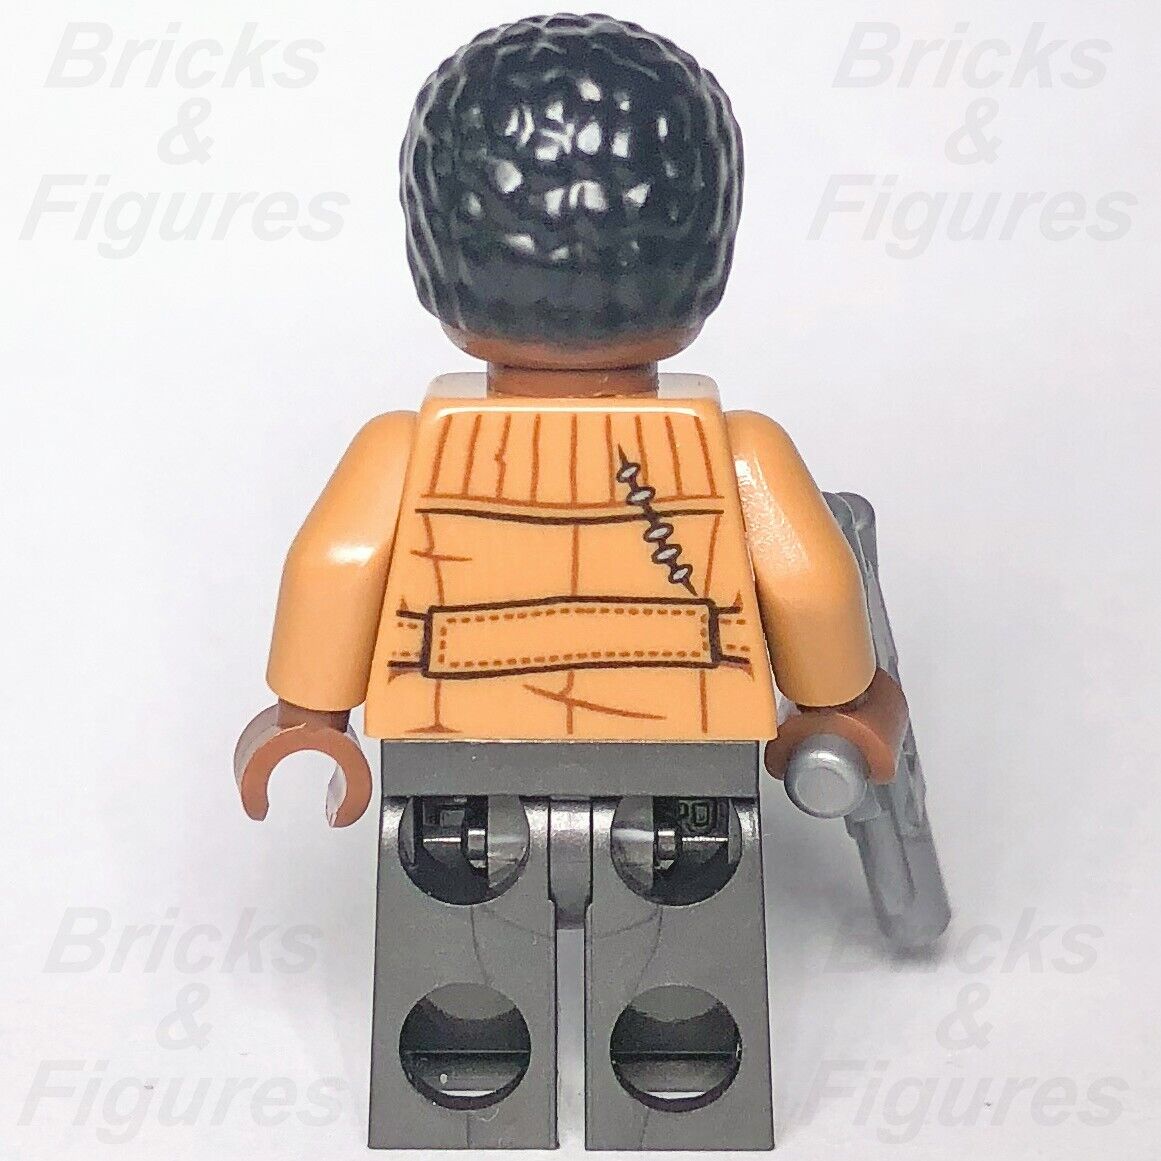 LEGO Star Wars Finn Minifigure Stormtrooper FN-2187 Resistance 75176 sw0858